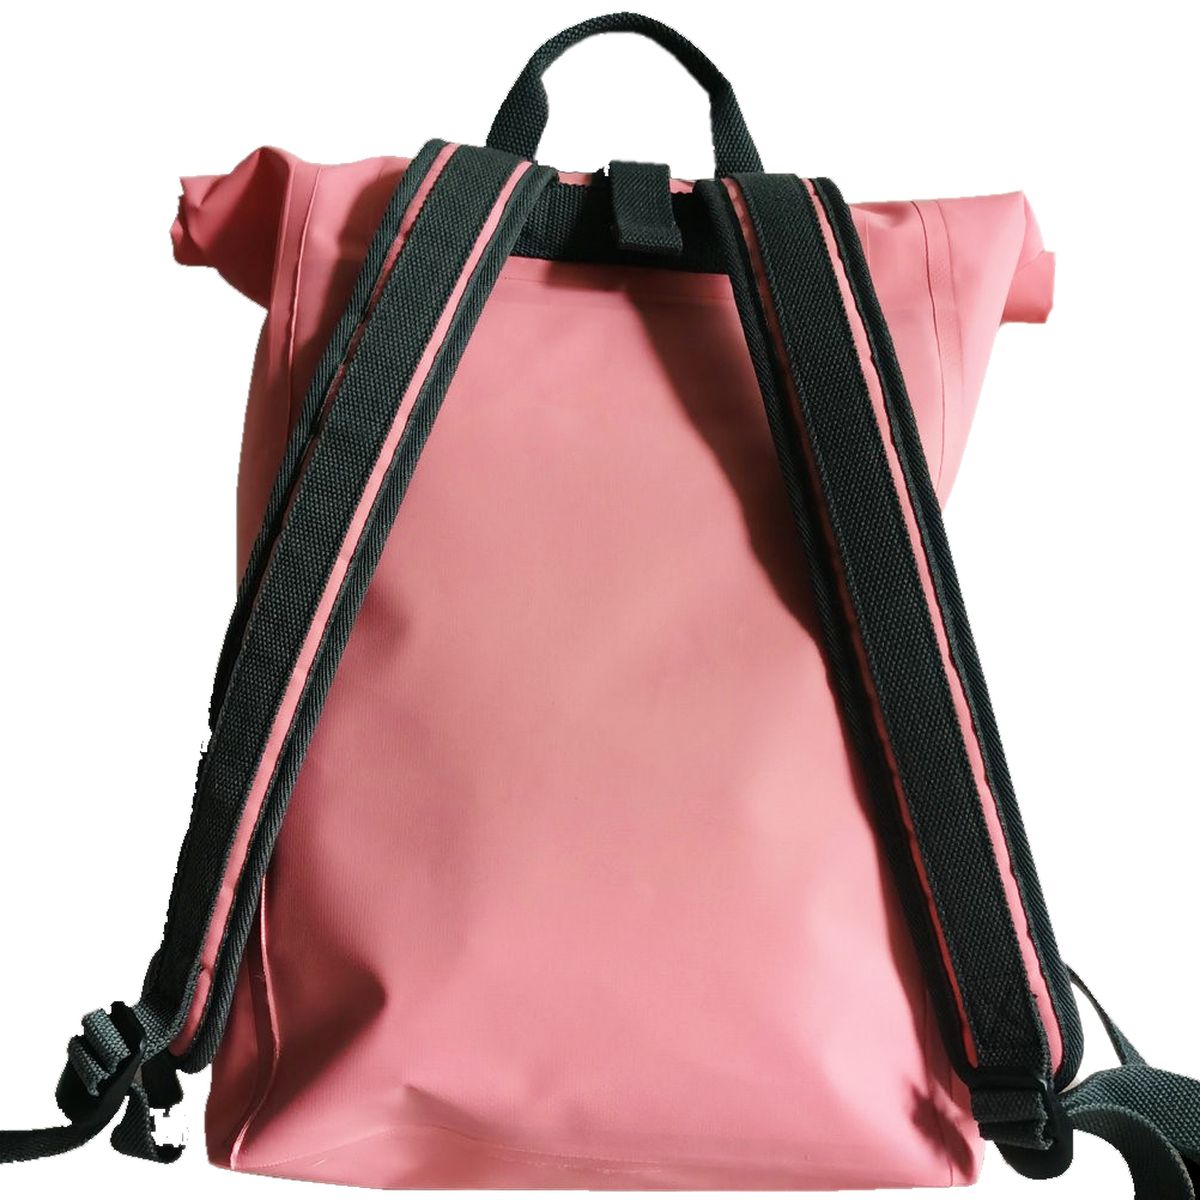 Waterproof backpack 15 Liters - Pink